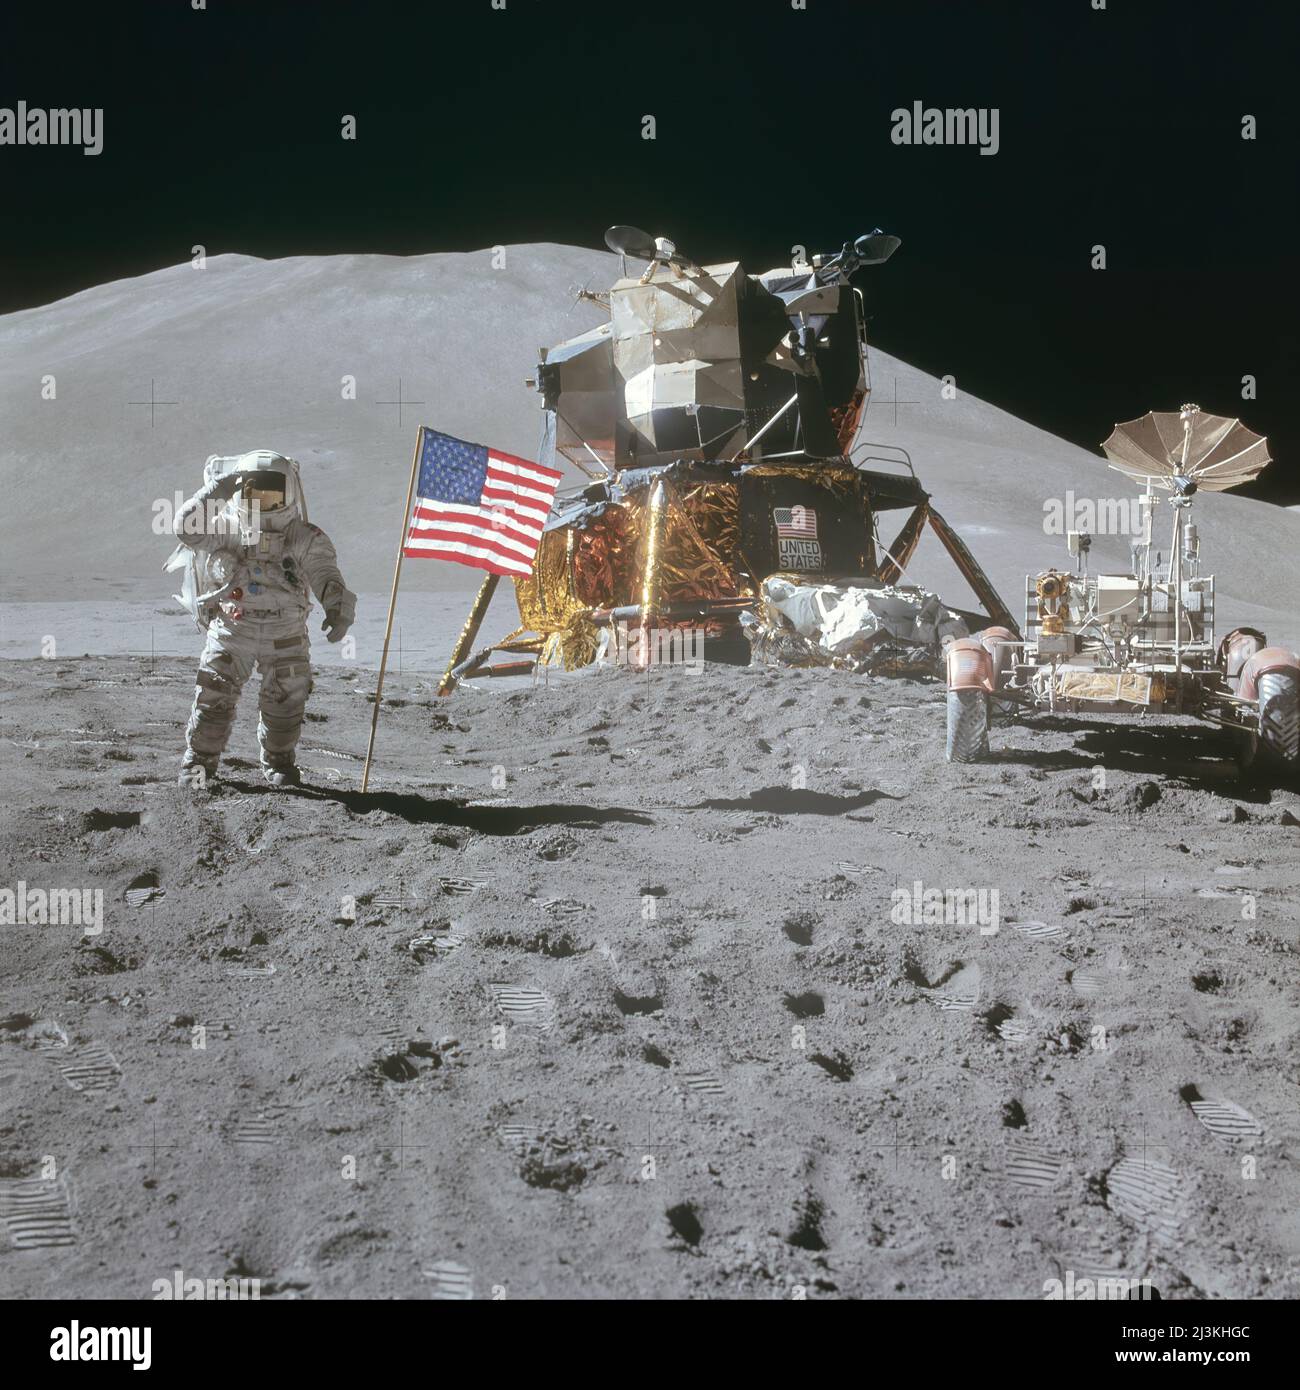 L'astronauta James Irwin, pilota a modulo lunare, saluta bandiera americana durante l'attività extraveicolare della superficie lunare Apollo 15 (EVA) presso il sito di atterraggio di Hadley-Appennine. Il modulo Lunar (LM) 'Falcon' si trova al centro. Sulla destra si trova il Lunar Roving Vehicle (LRV). Il delta di Hadley sullo sfondo sorge a circa 4.000 metri (circa 13.124 piedi) sopra la pianura. Foto Stock